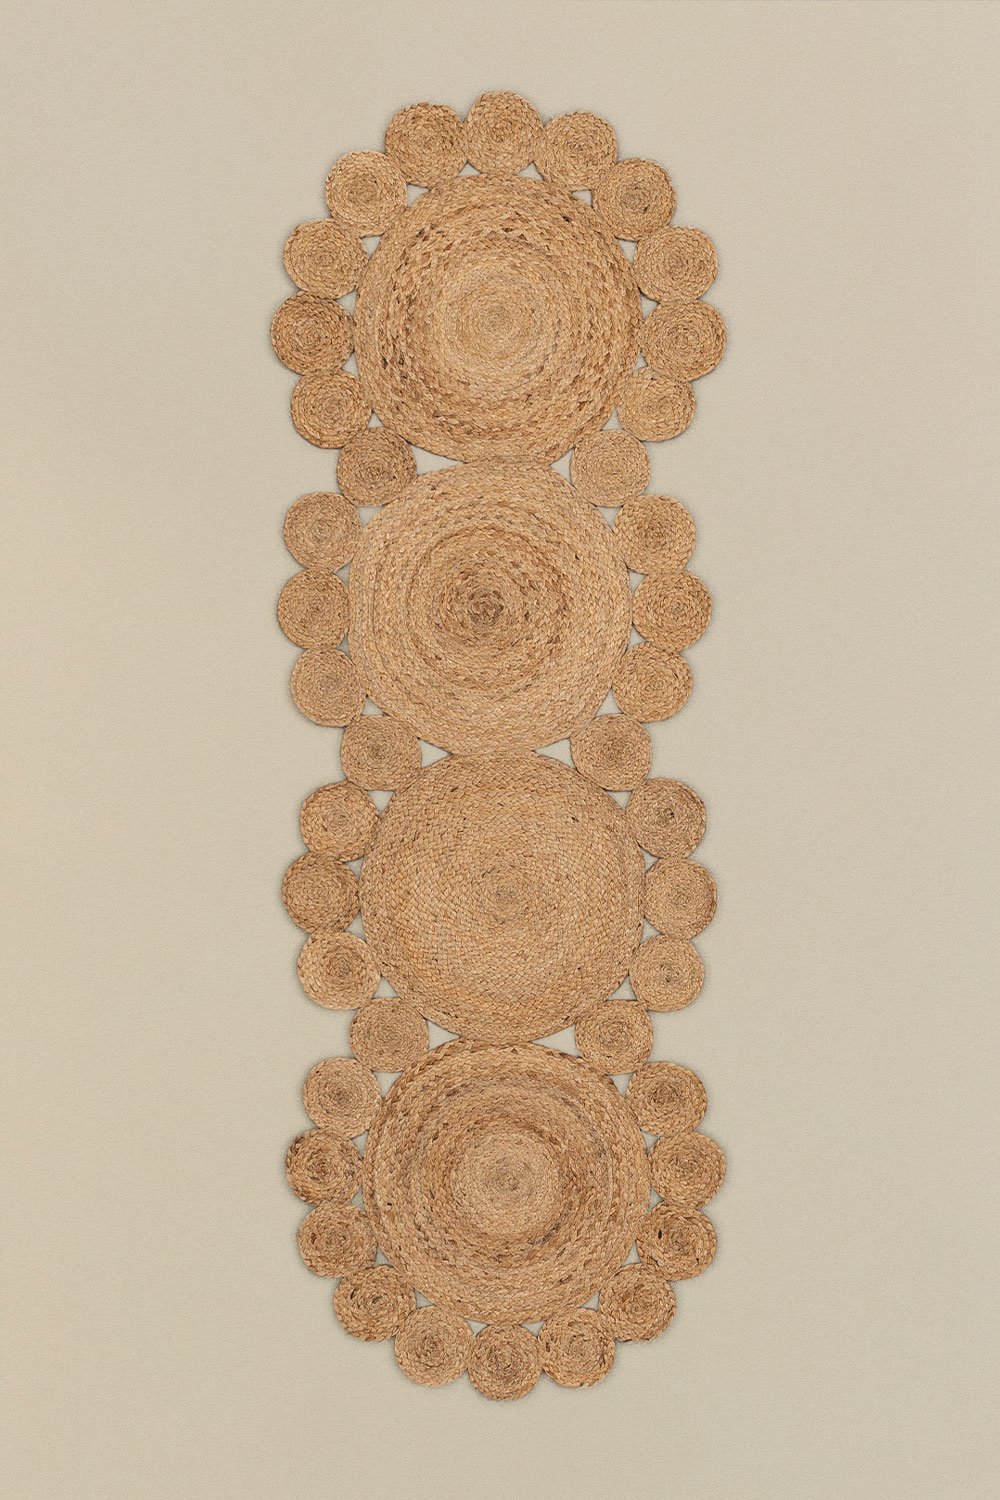 Tapis en Jute Naturel (180x60 cm) Otilie, image de la galerie 2506653